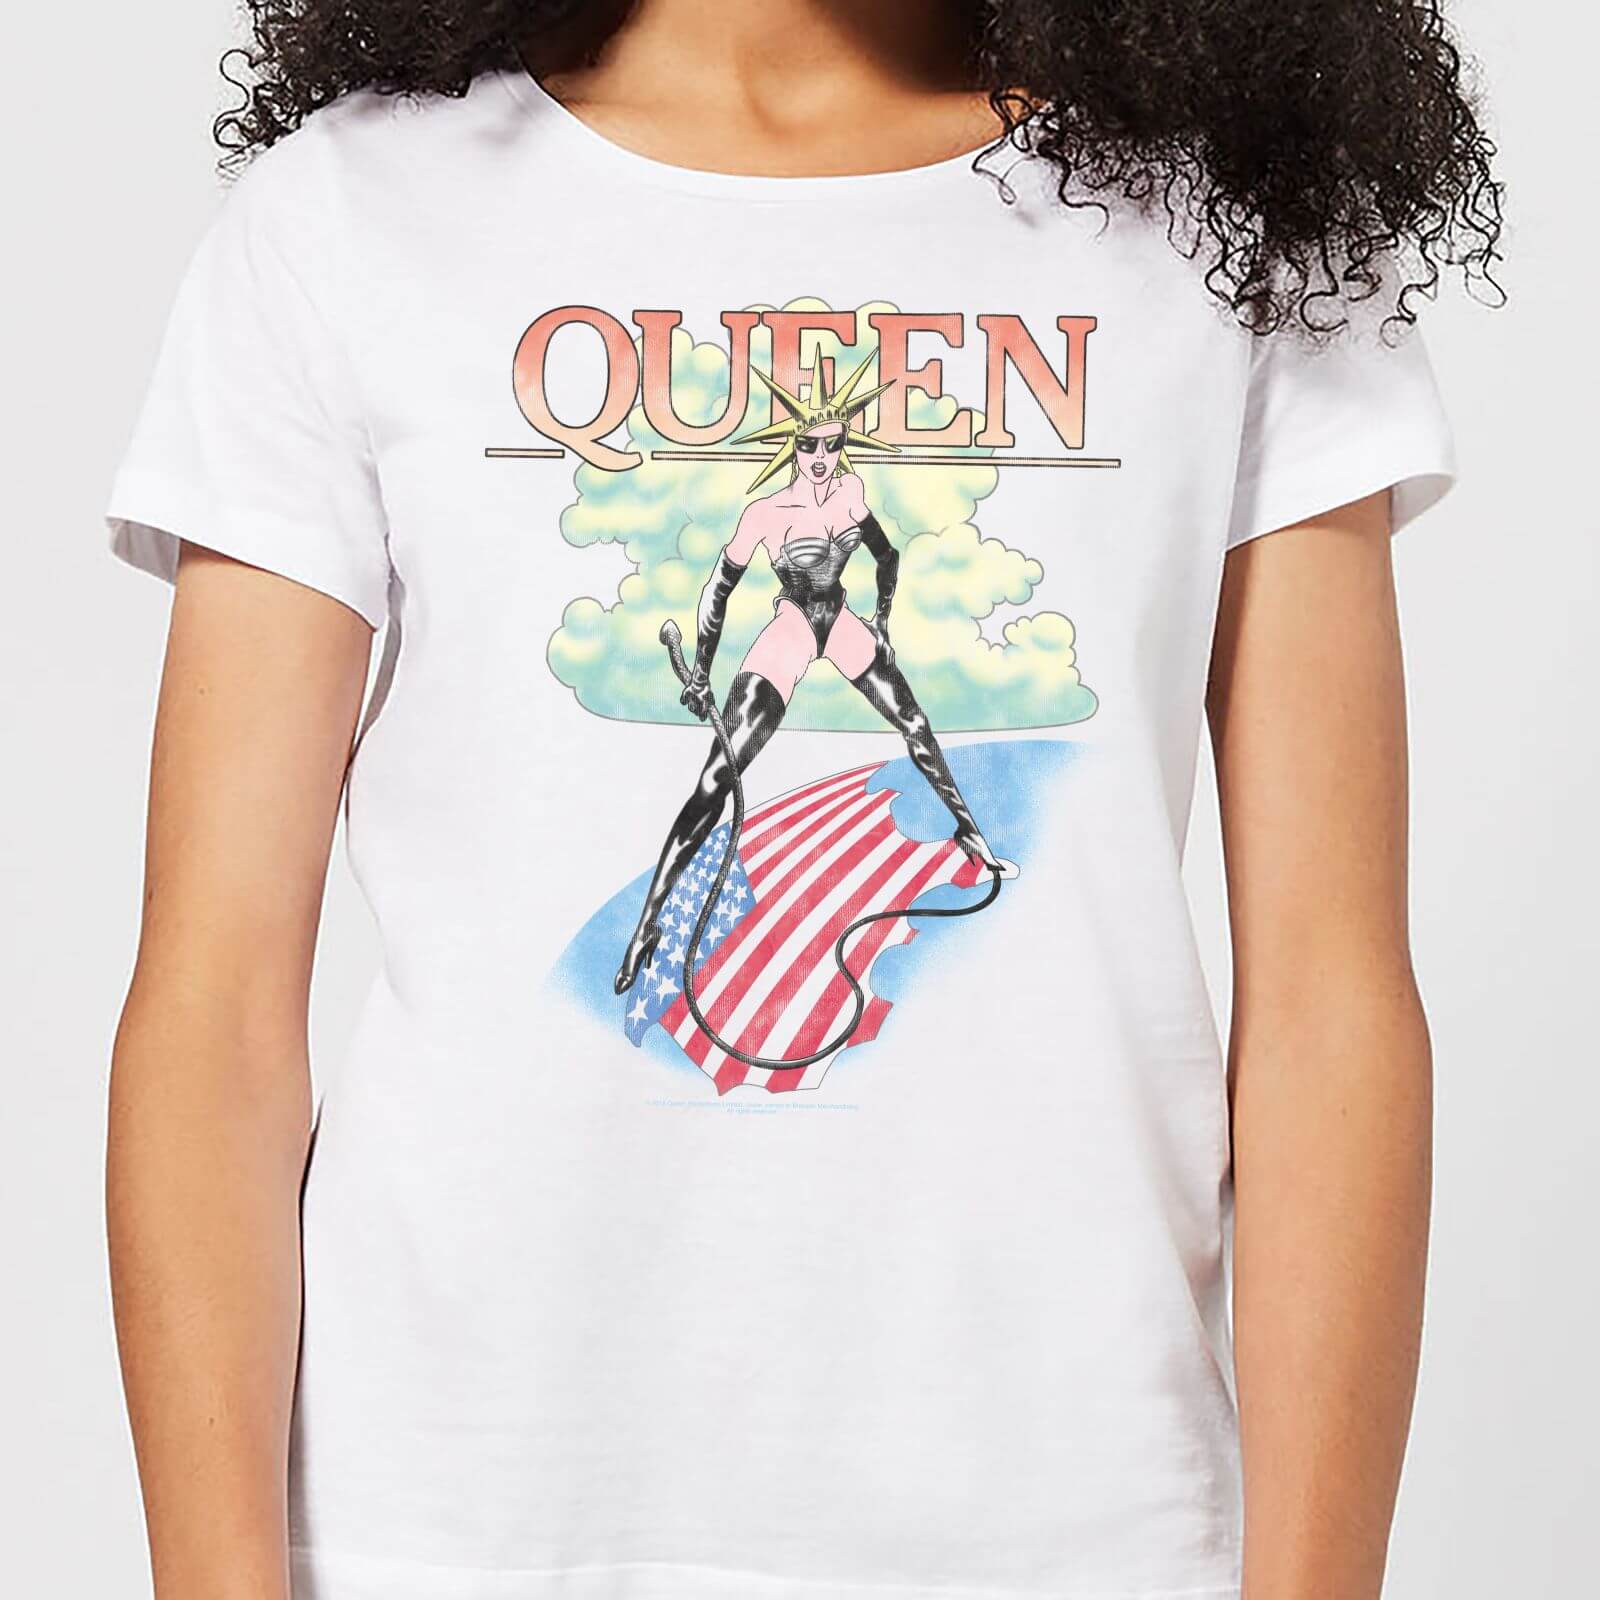 Queen Vintage Tour Women's T-Shirt - White - L